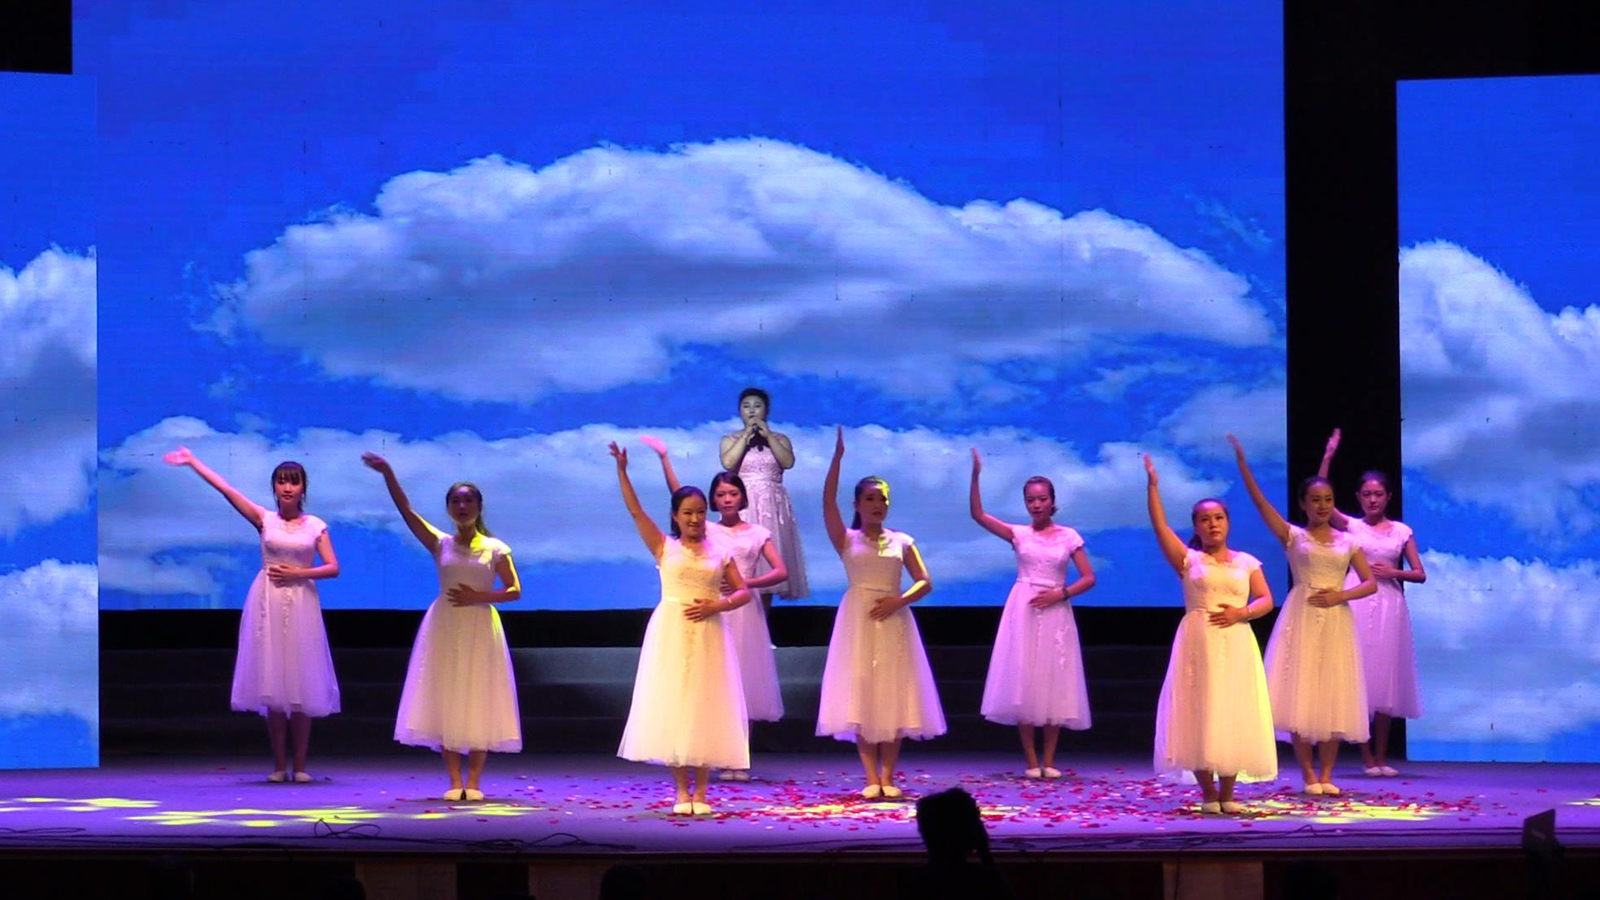 安徽佛教梵呗艺术团文艺演出节目:手语歌舞《感恩一切》